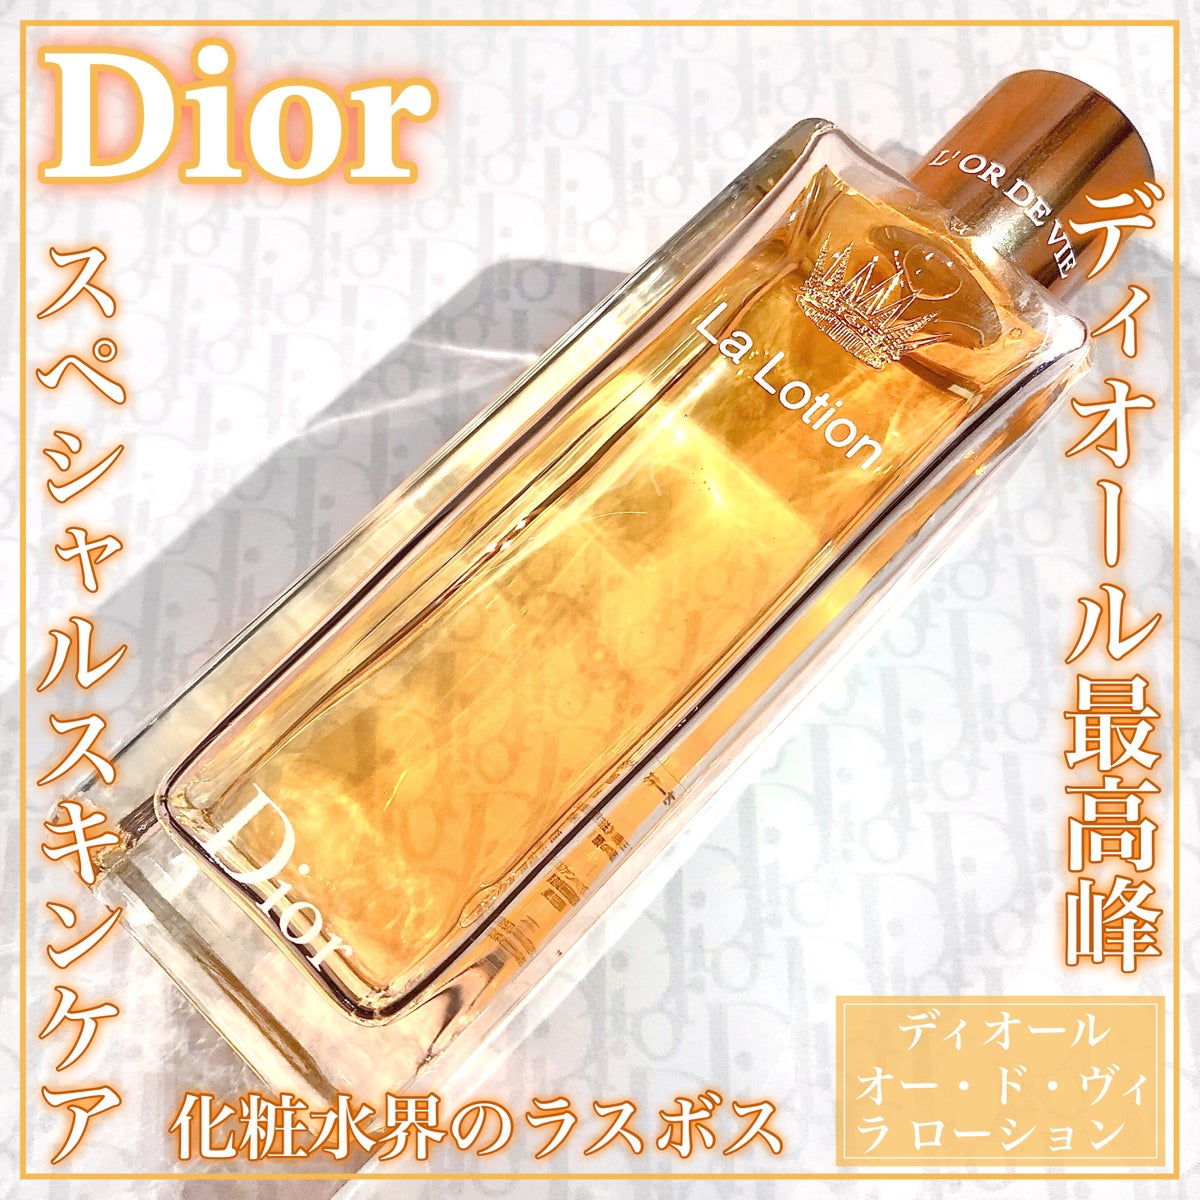 Dior*オードヴィラローション〈保湿化粧水〉200ml - 化粧水/ローション